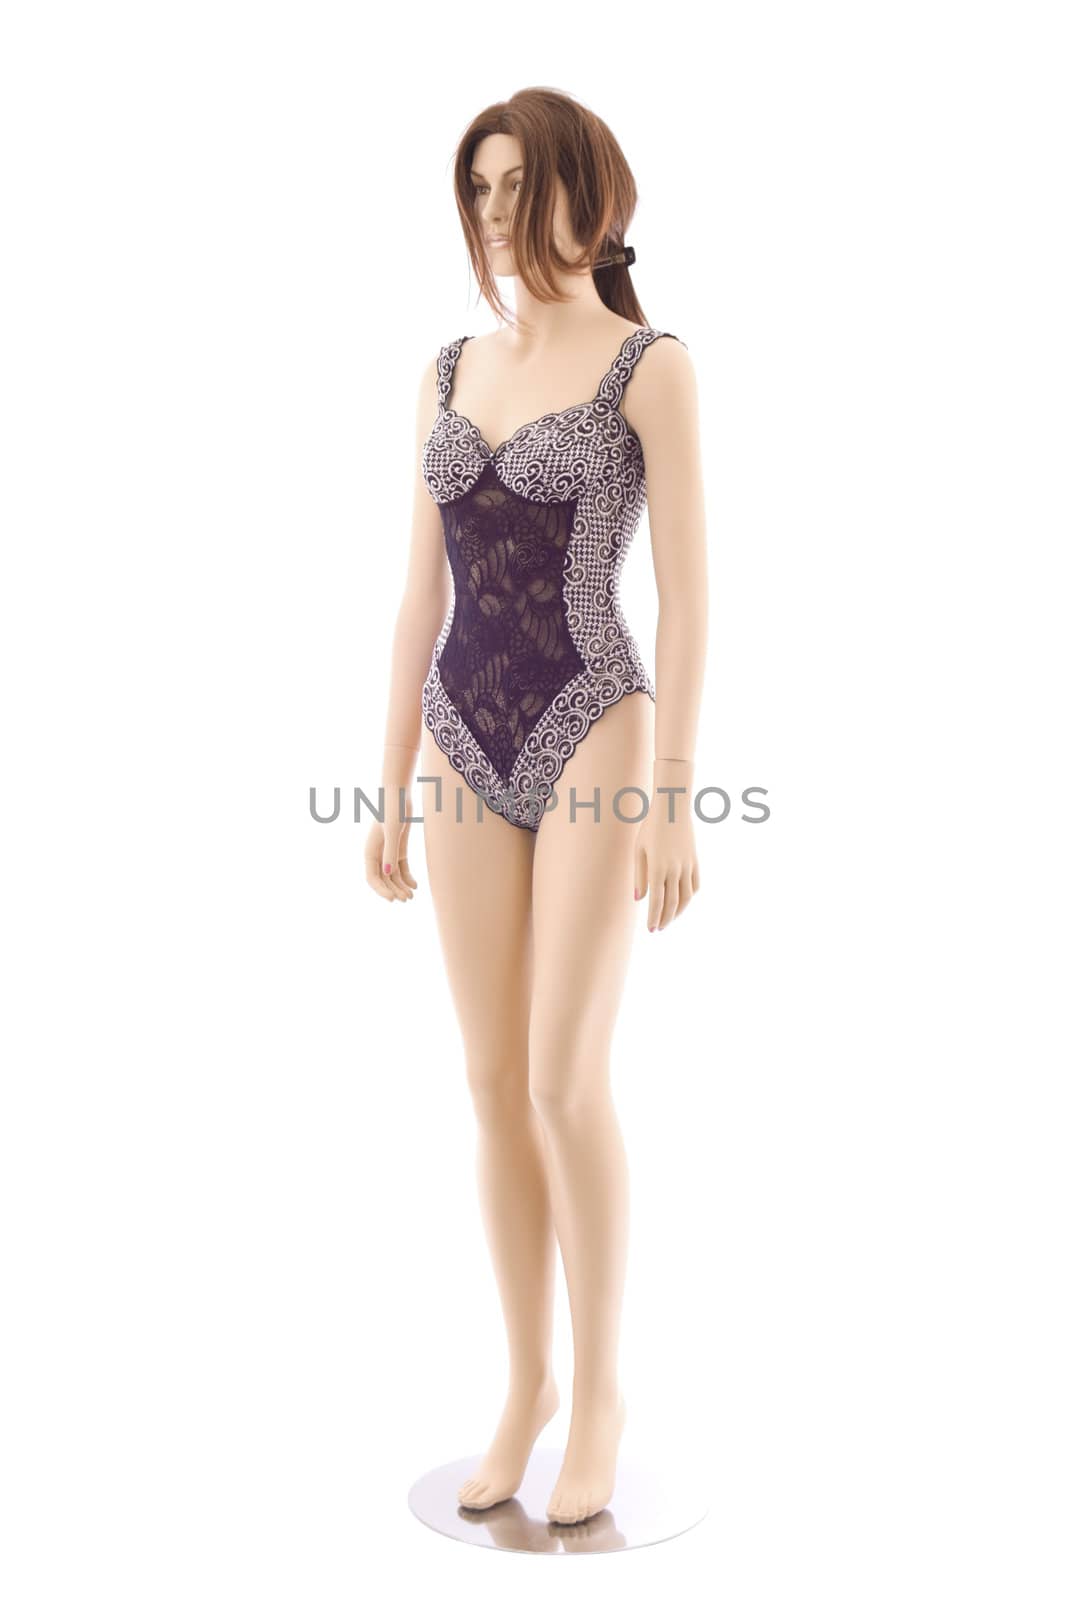 Mannequin in underwear | Isolated by zakaz